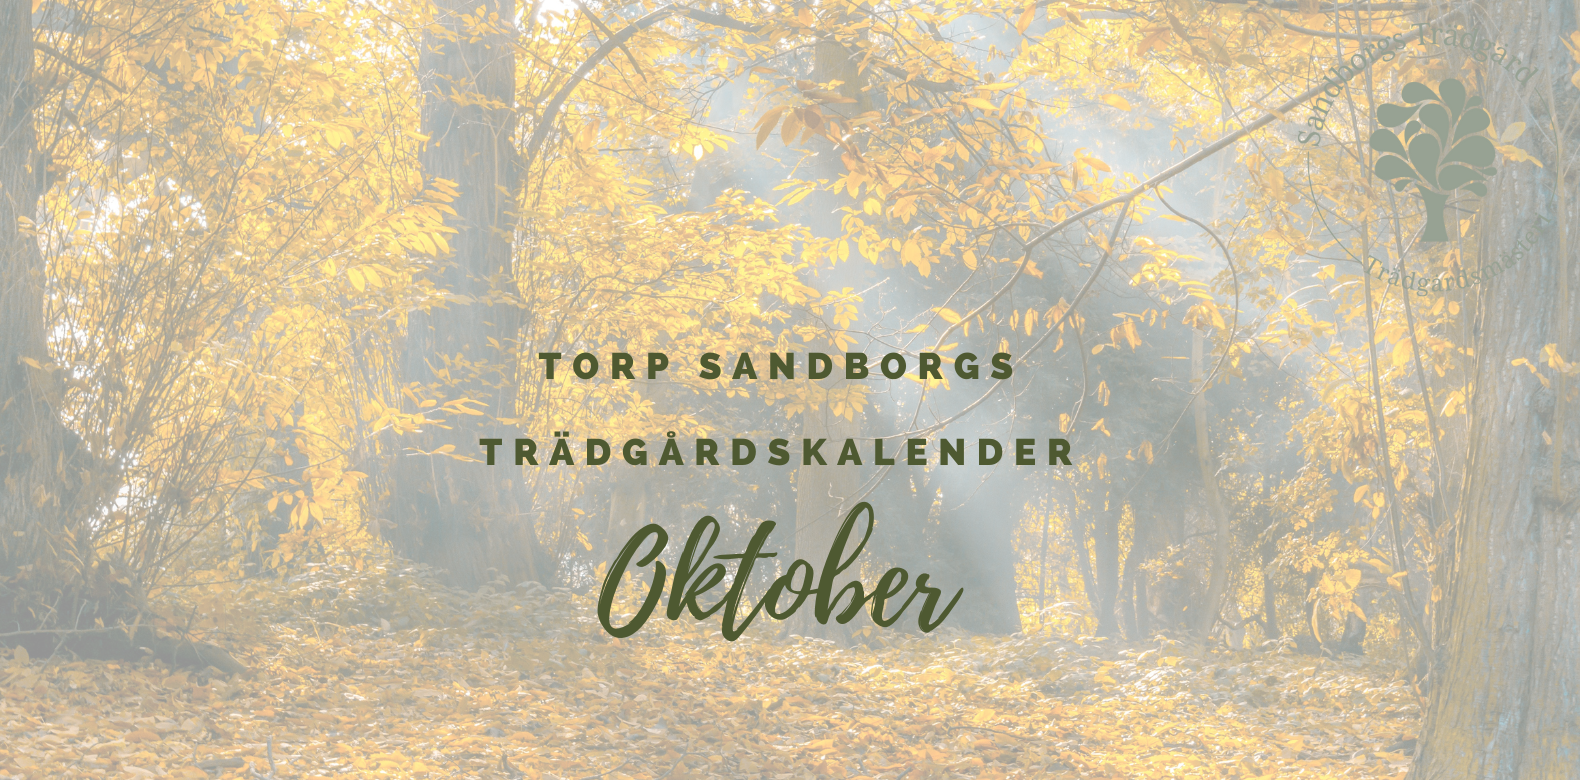 Trädgårdskalender | Sandborgs Trädgård